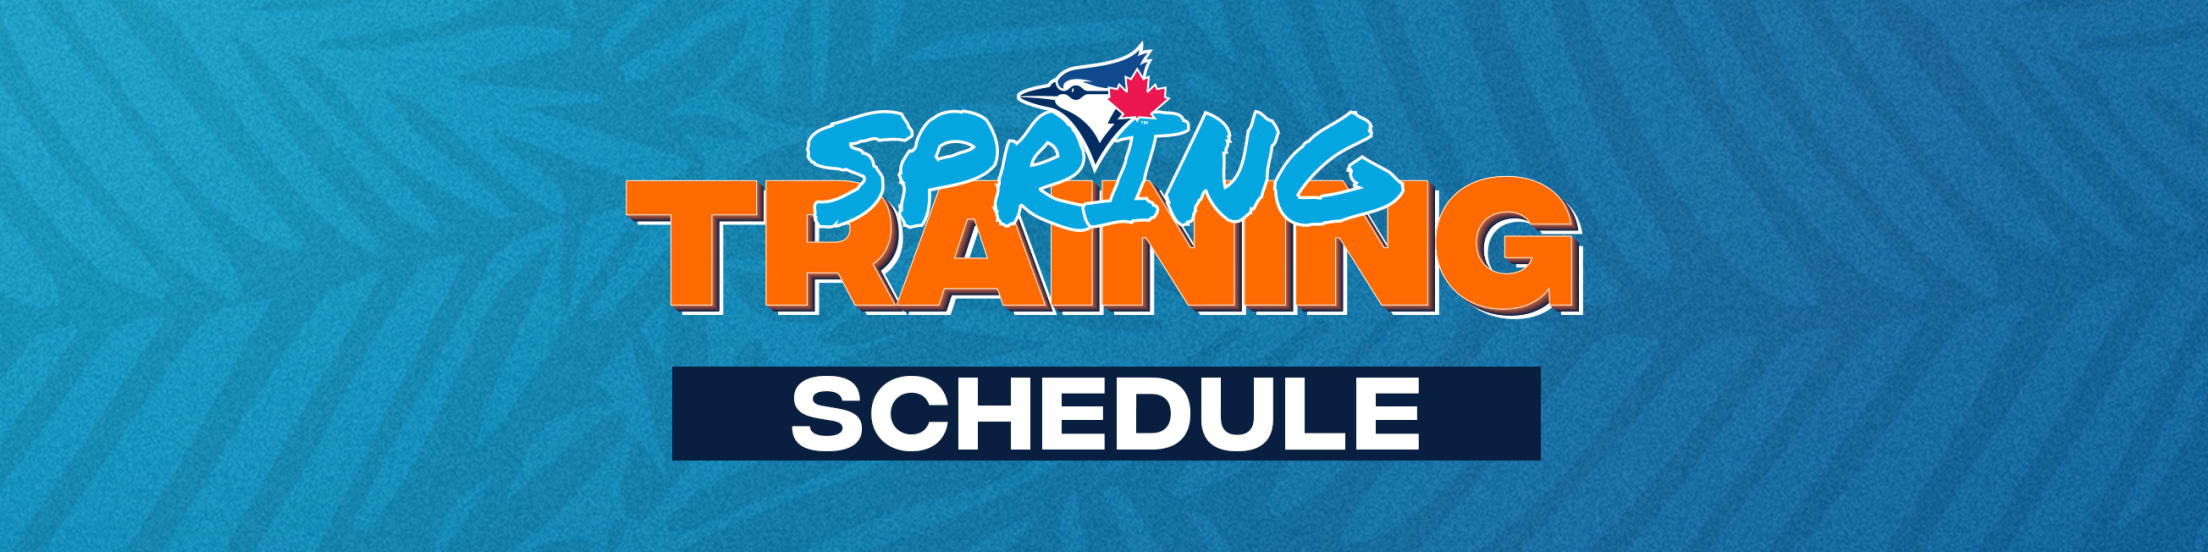 Spring Training Schedule